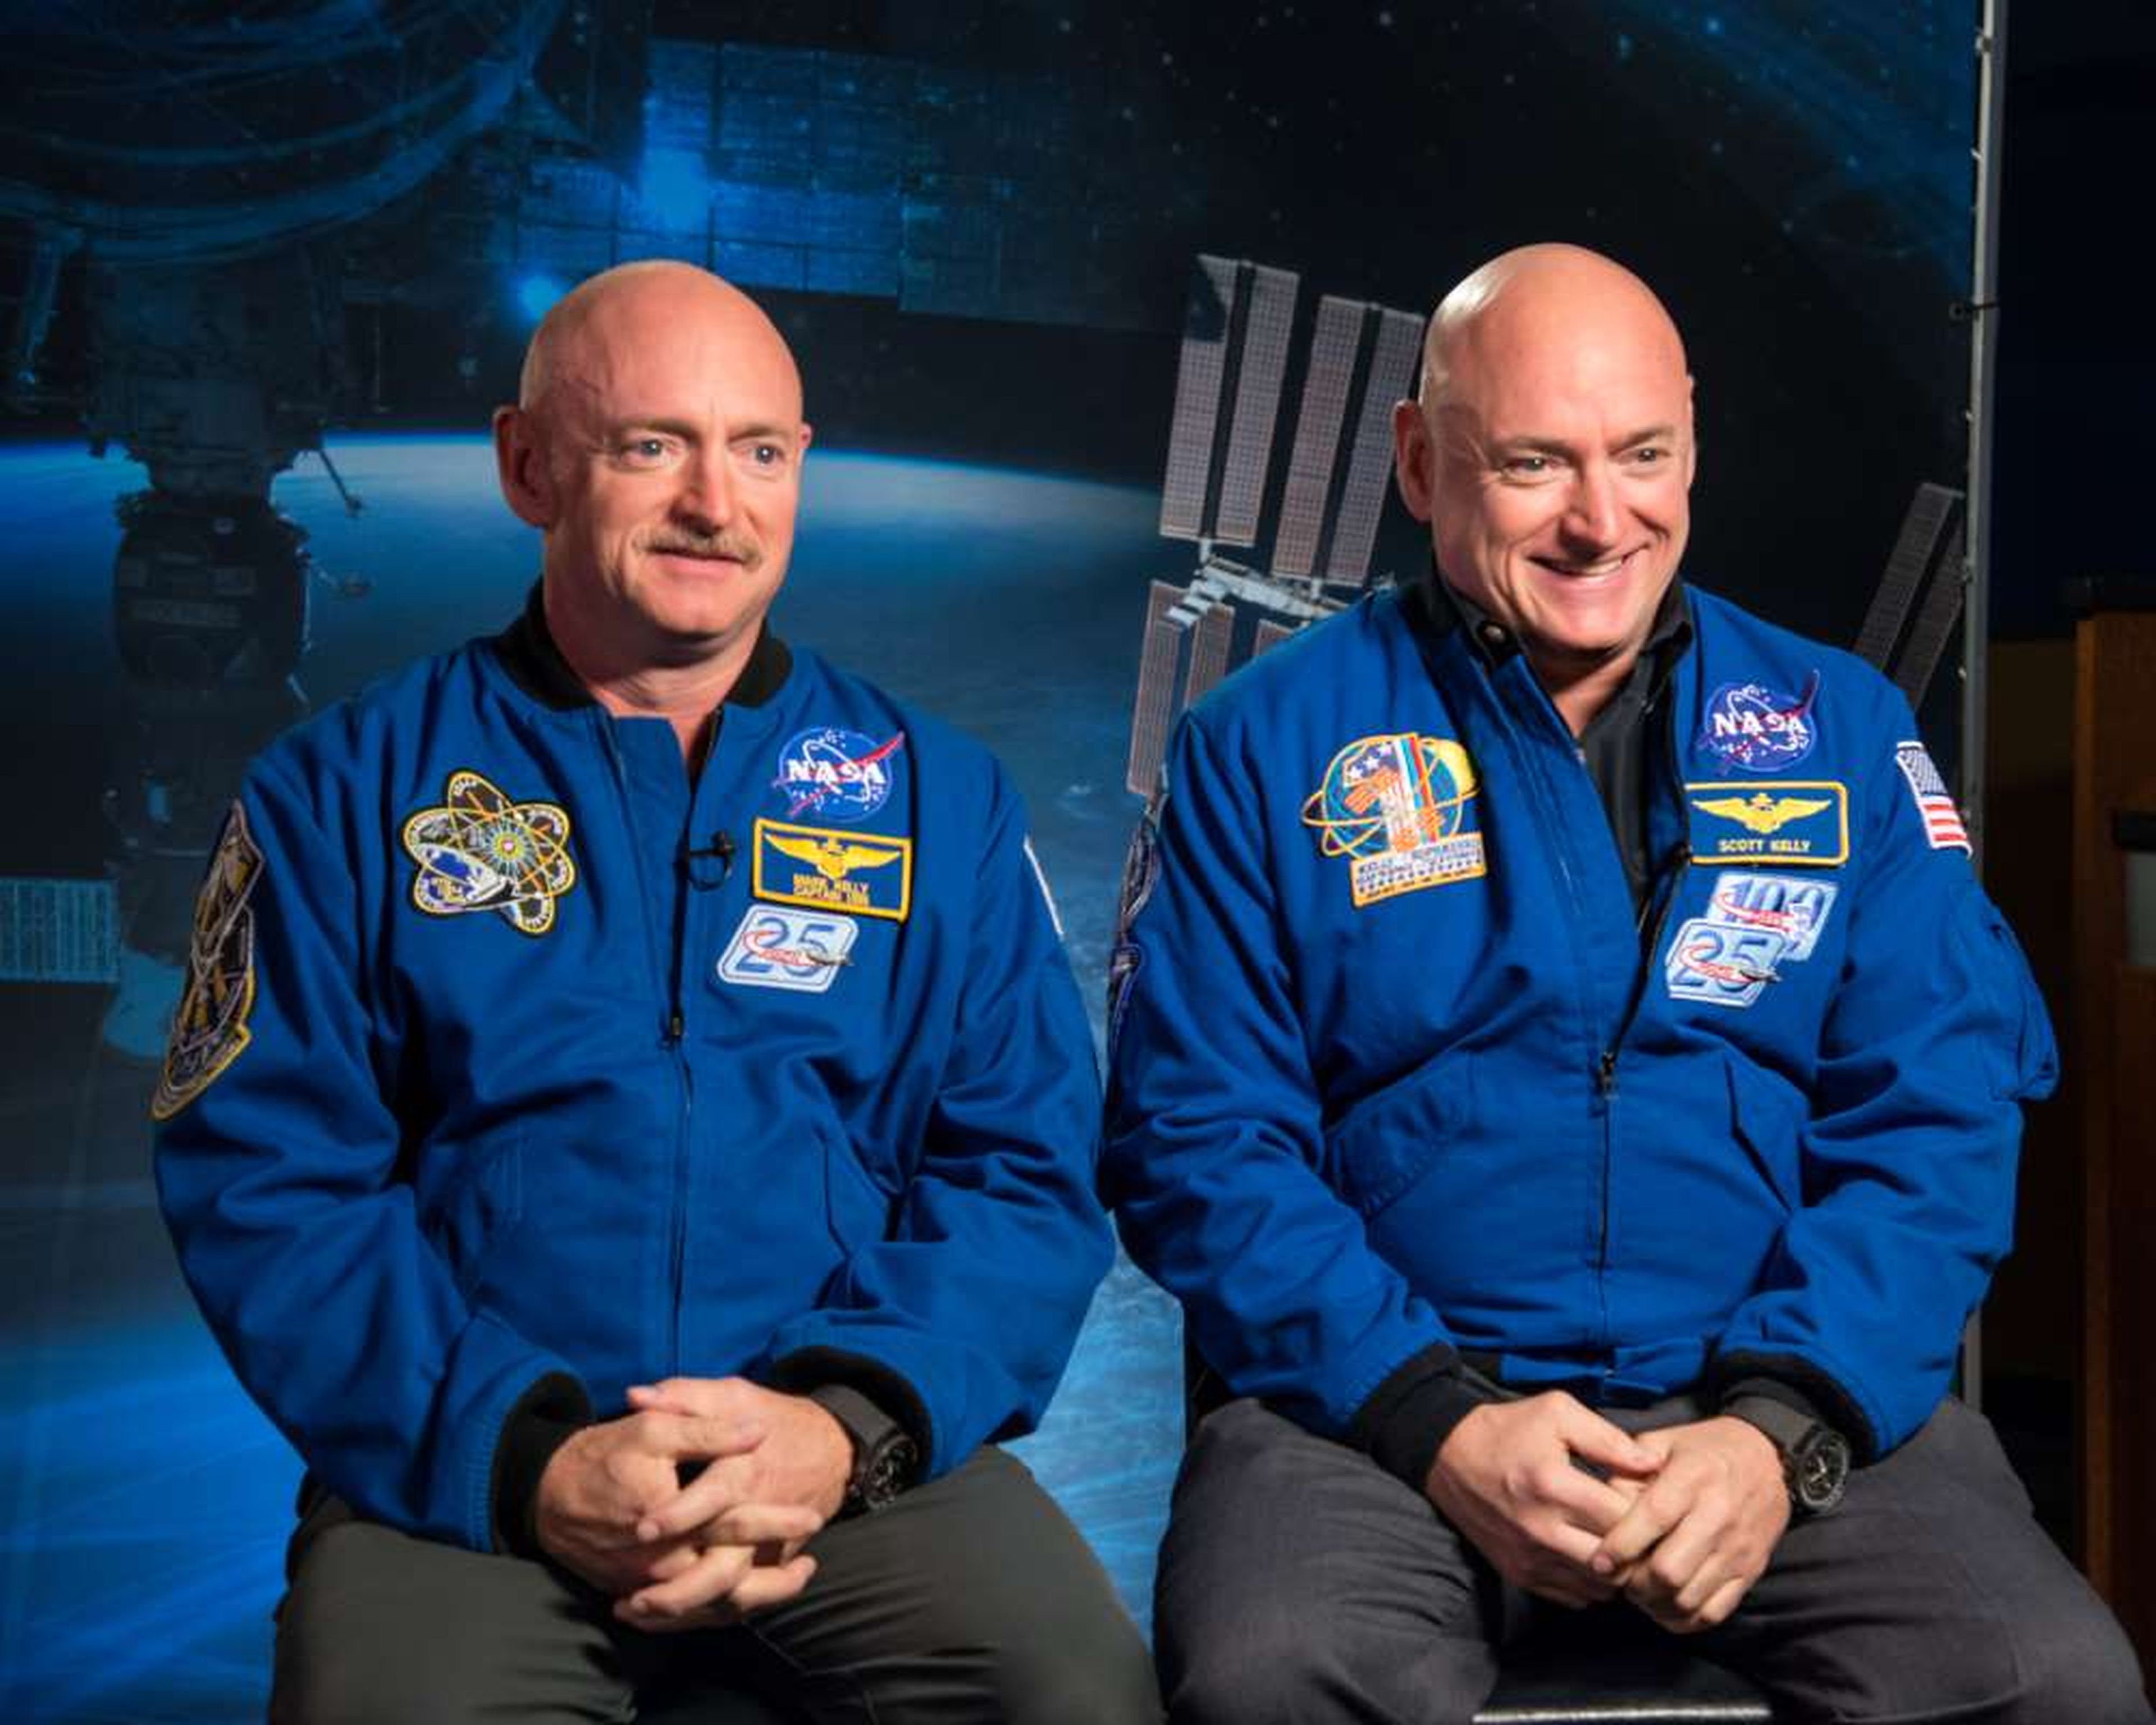 Scott y Mark Kelly, los gemelos que han servido como sujetos de estudio en la investigación sobre qué efecto tiene sobre el cuerpo humano vivir en el espacio.